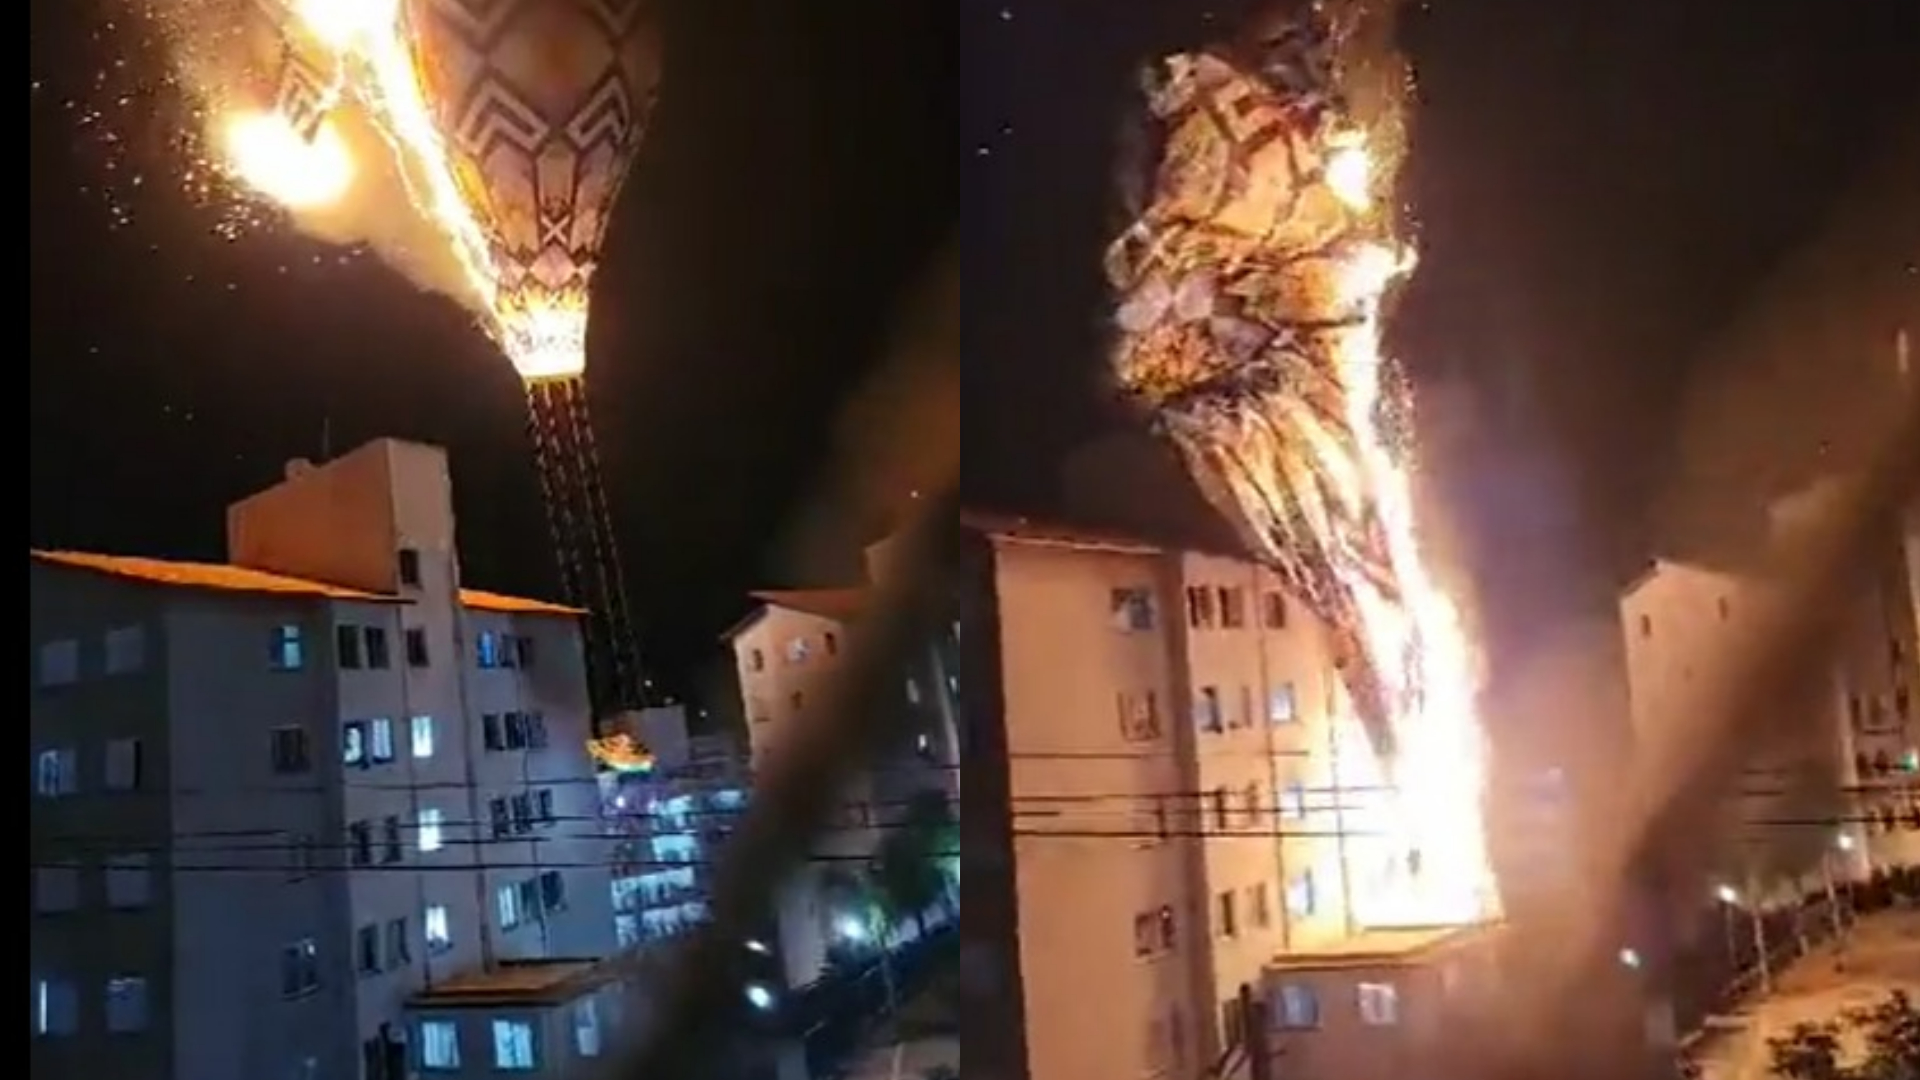 Desesperador! Vídeo mostra momento em que balão em chamas atinge prédio em São Paulo